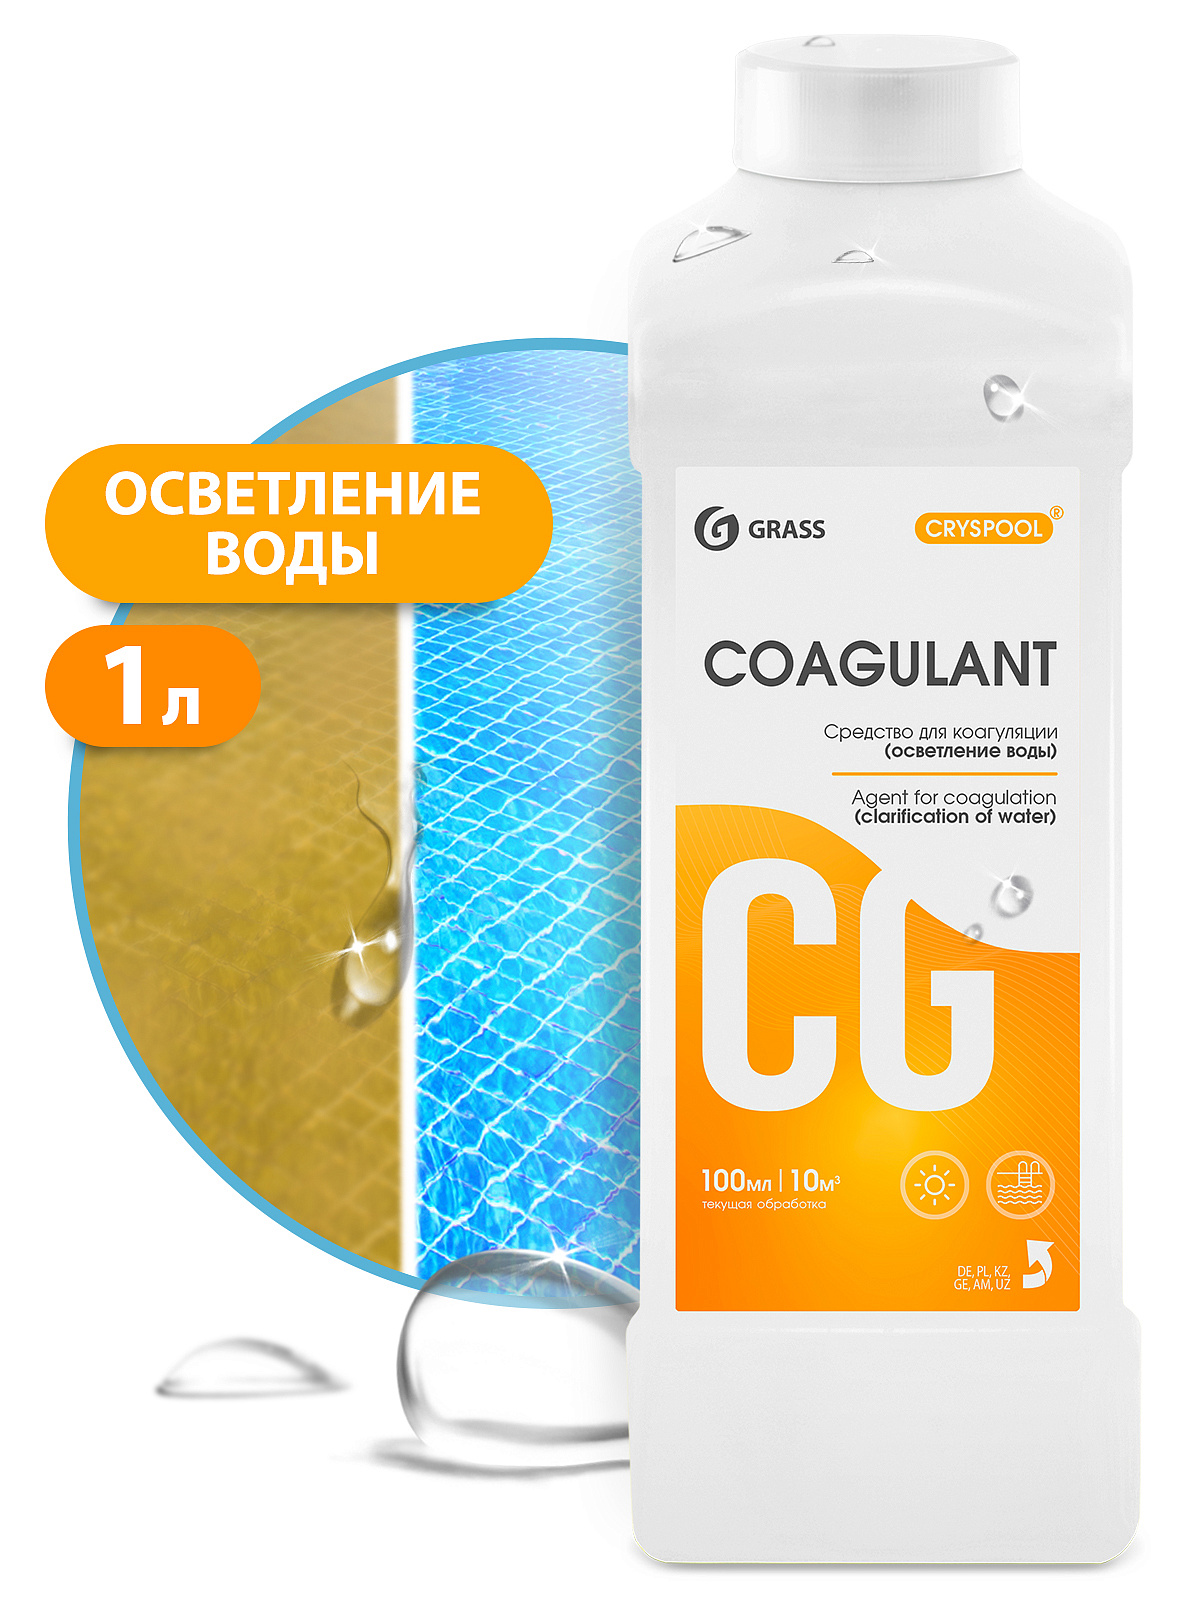 GRASS Средство для коагуляции воды CRYSPOOL Coagulant 1л 